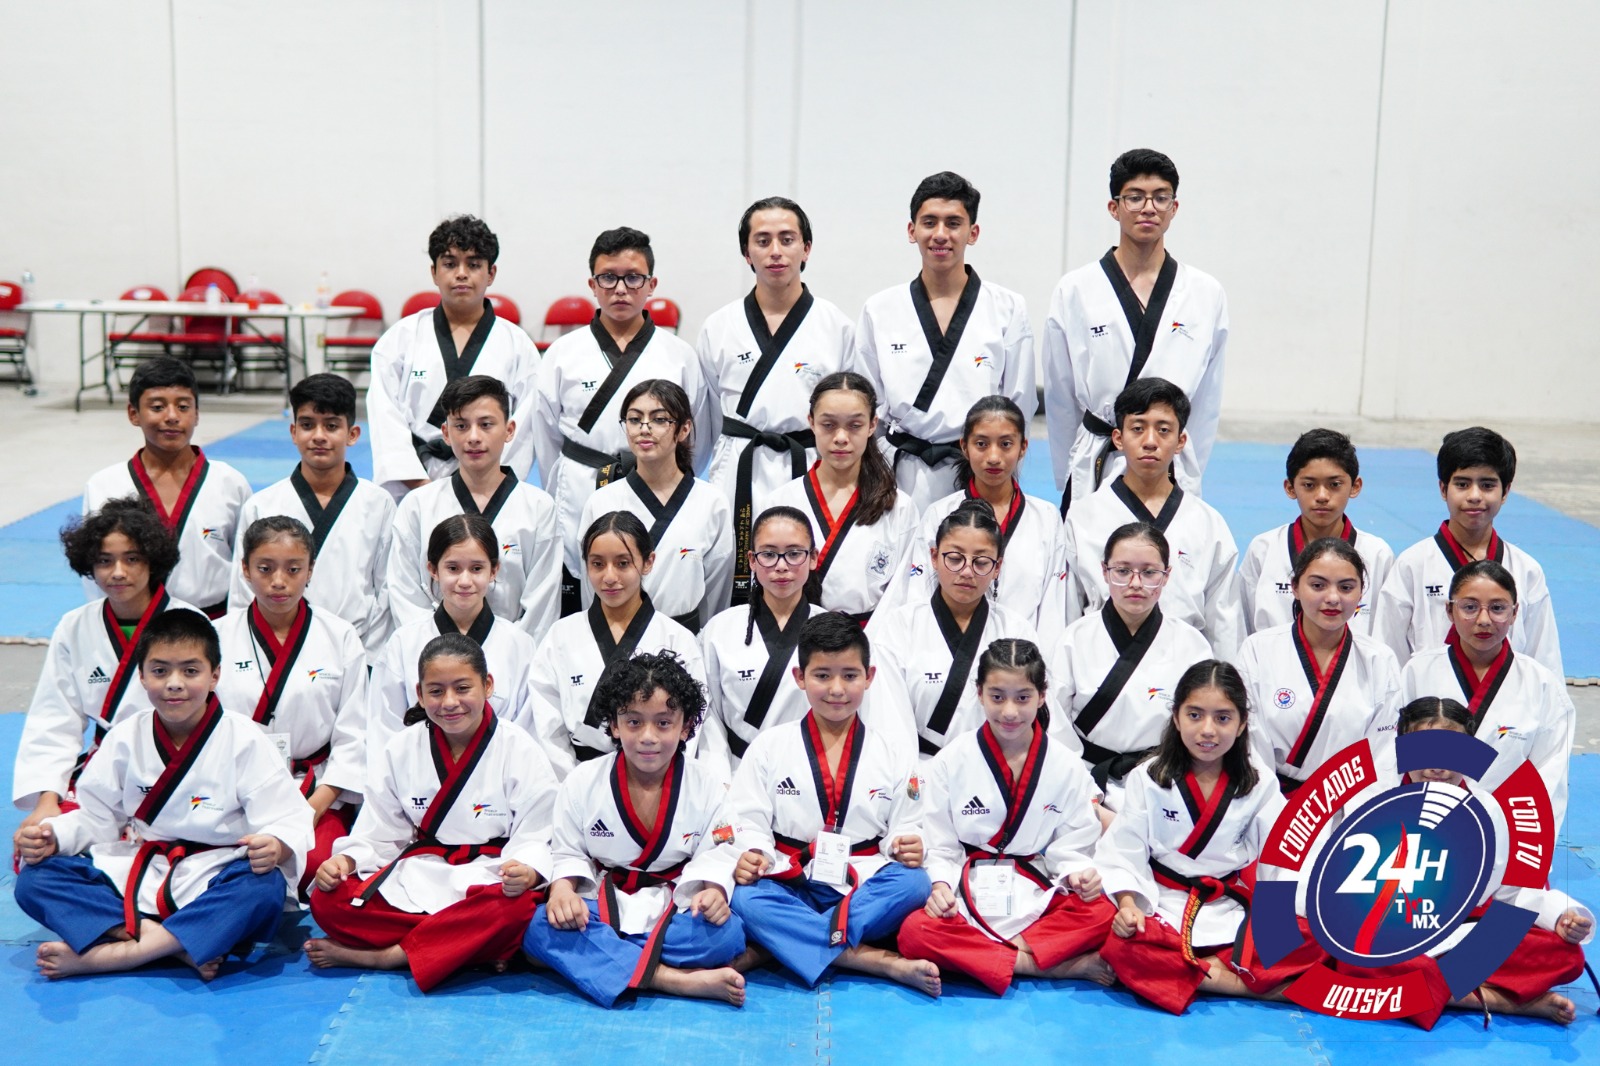 Instituto Olímpico de Taekwondo San Cristóbal obtiene el mayor número de plazas de formas en el estatal de Juegos CONADE 2023